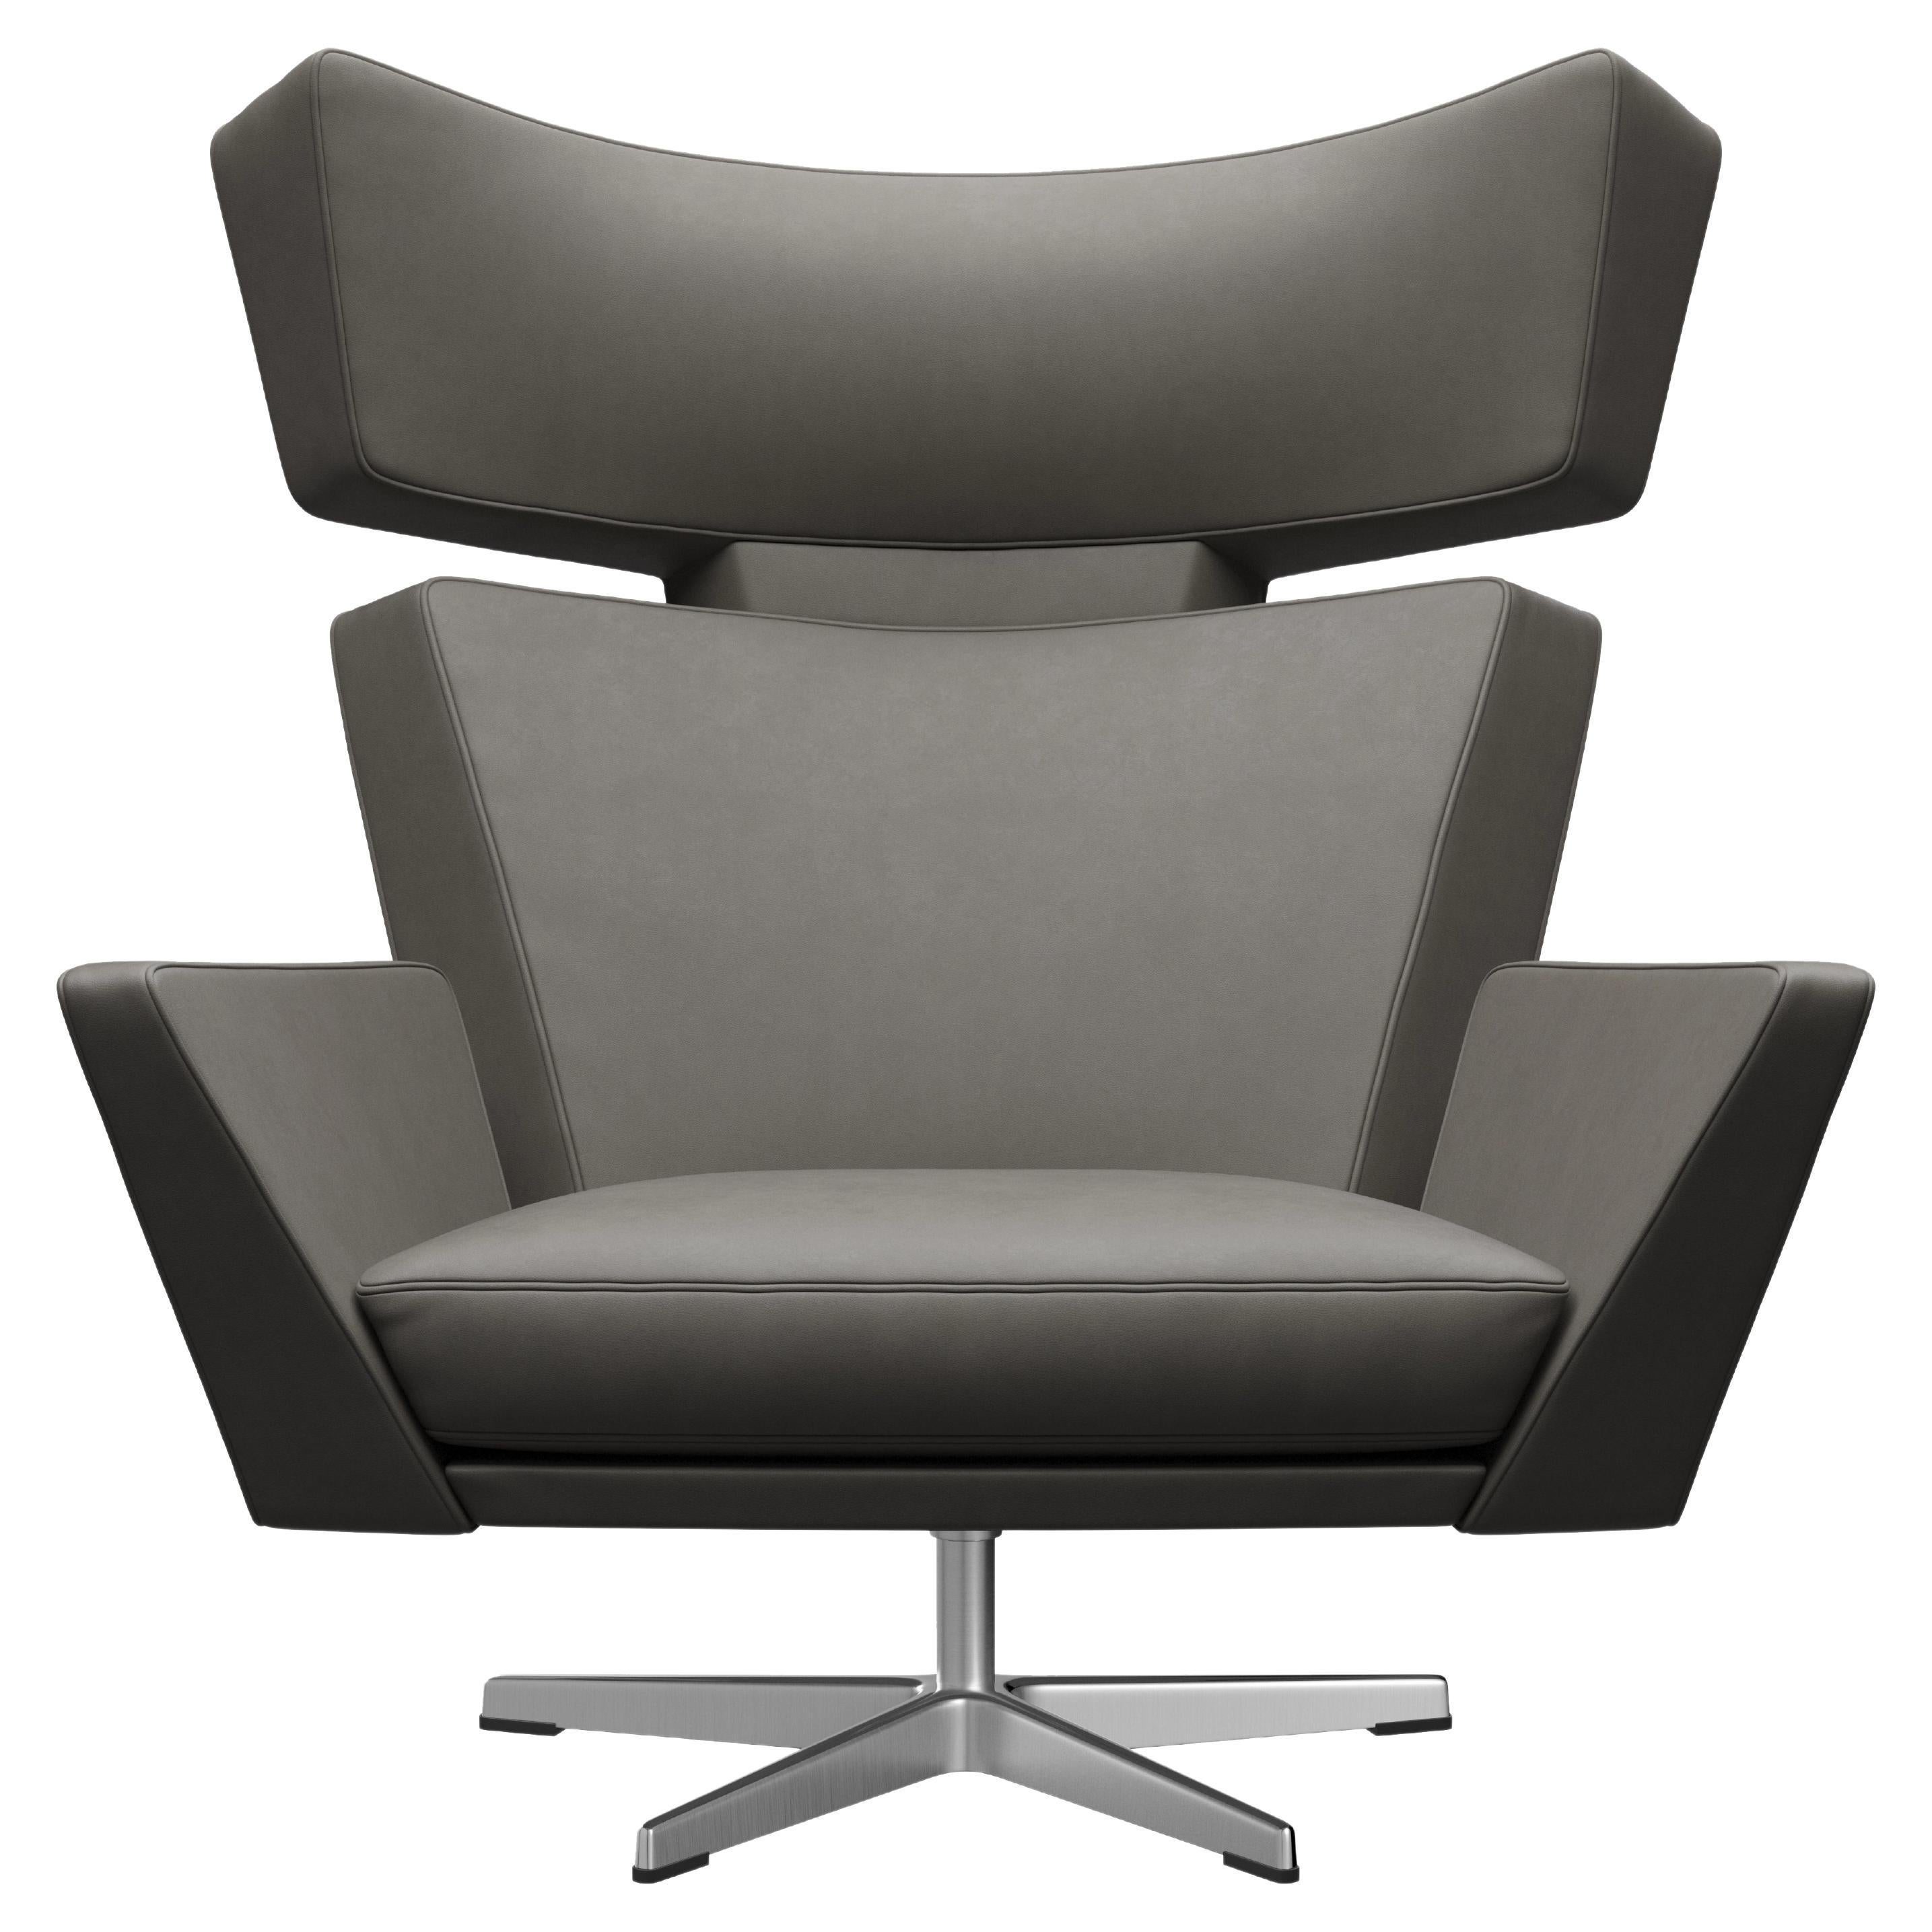 Arne Jacobsen 'Oksen' Chair for Fritz Hansen in Essential Leather Upholstery